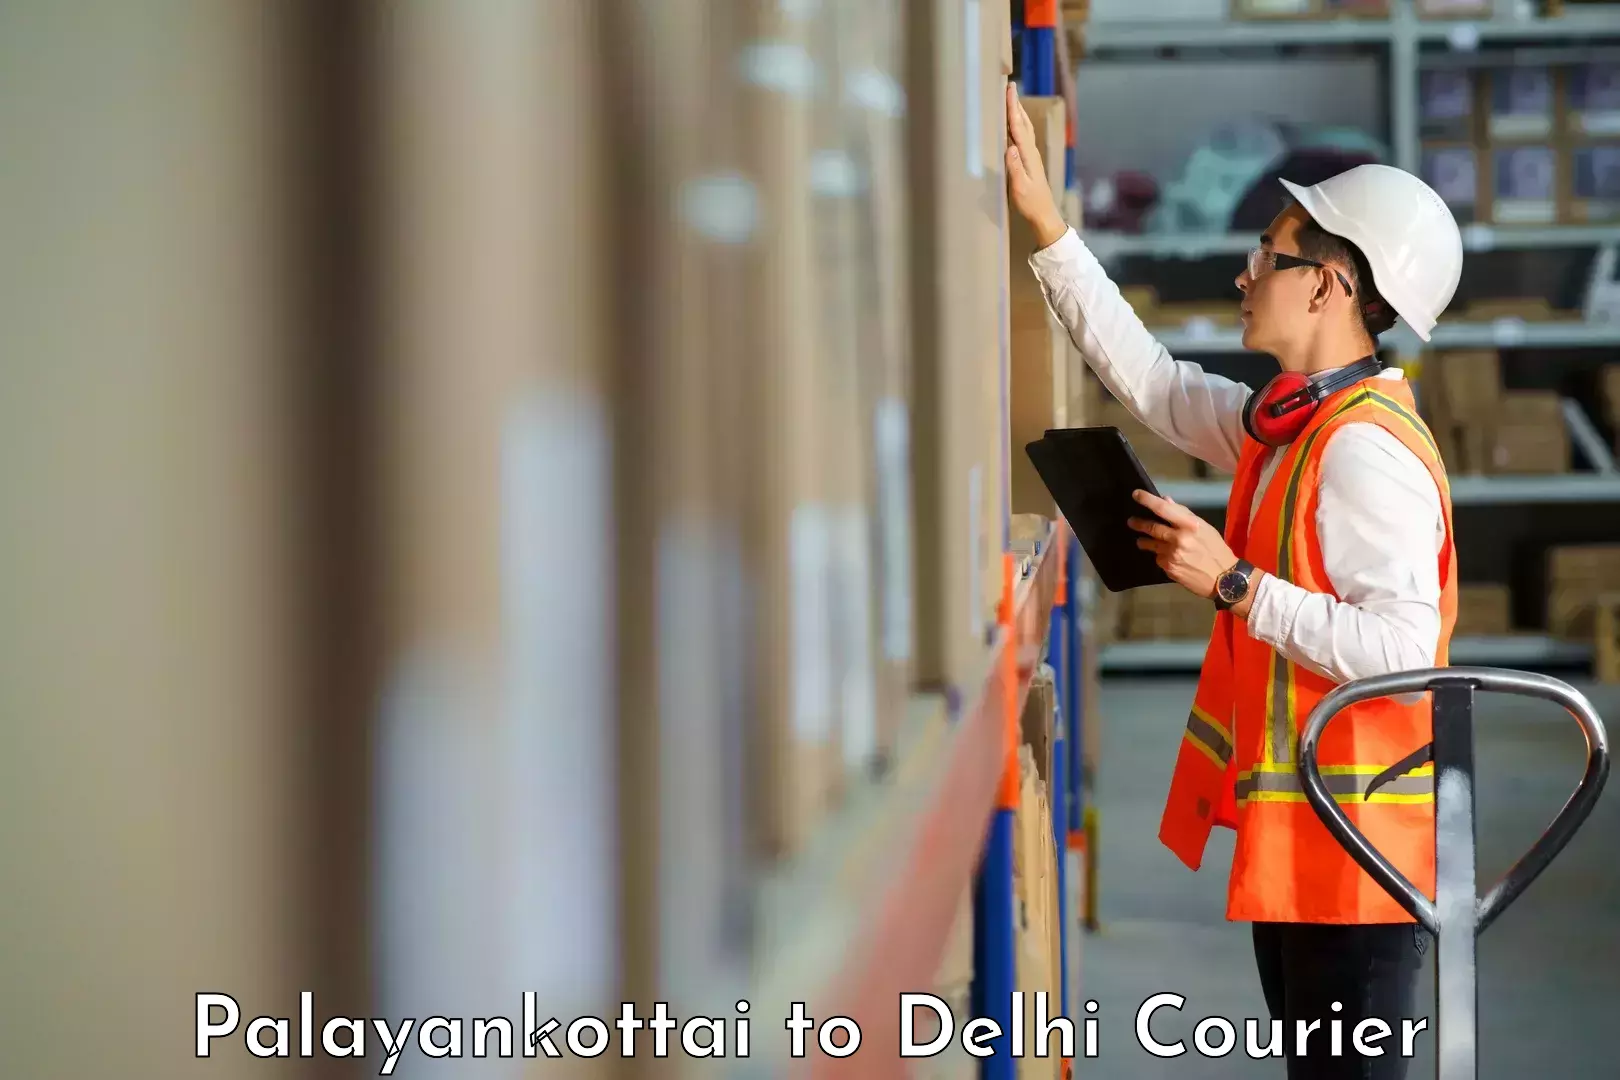 Versatile courier options Palayankottai to Jawaharlal Nehru University New Delhi